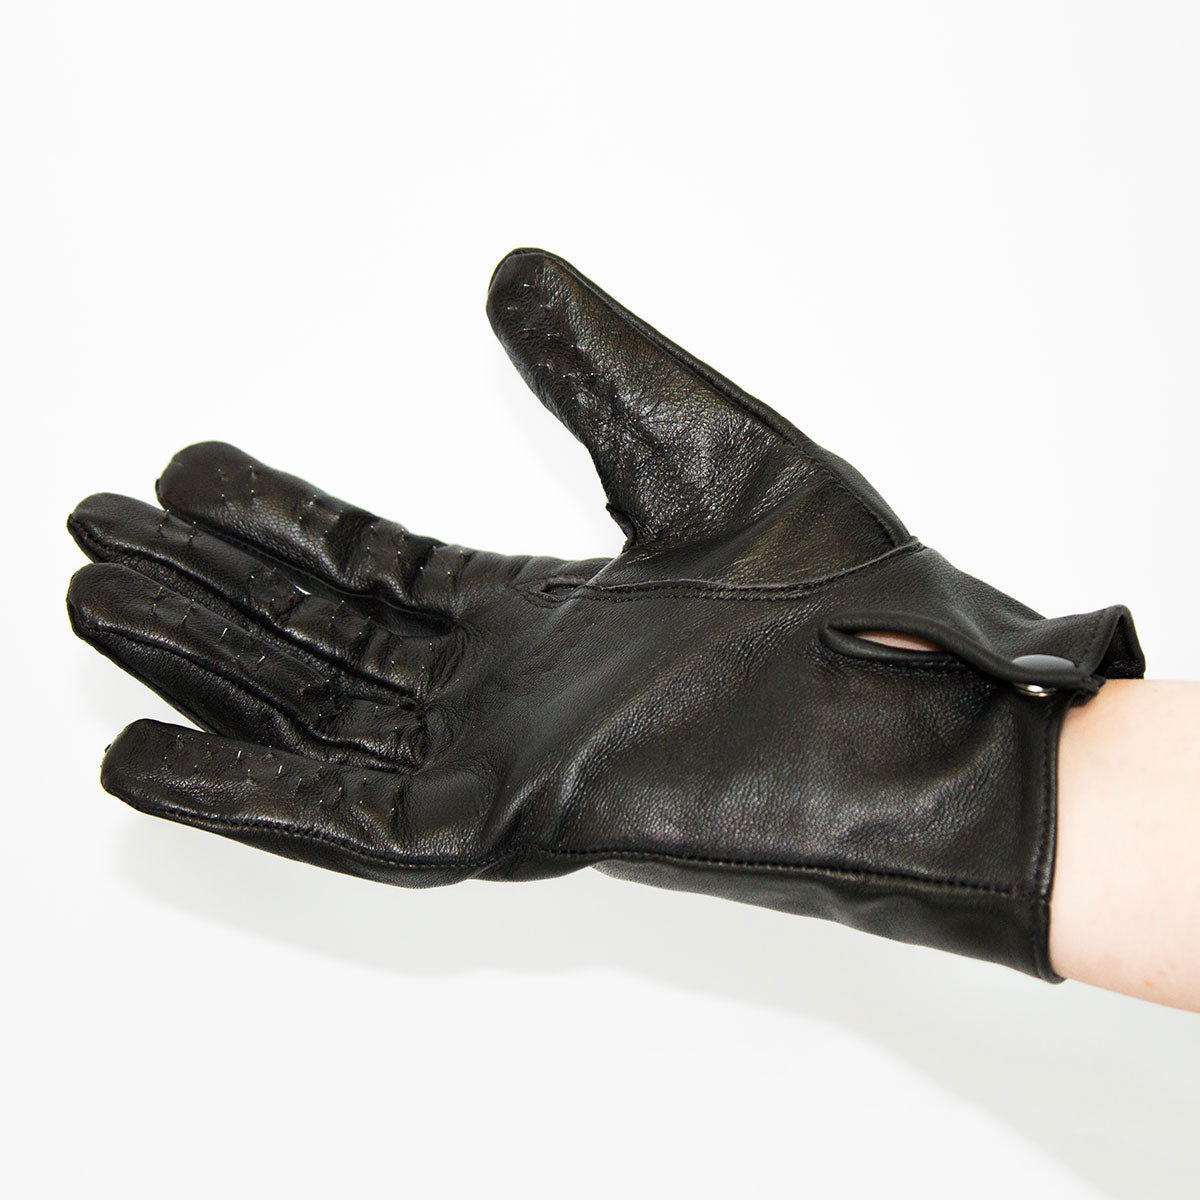 Vampire Gloves - Medium